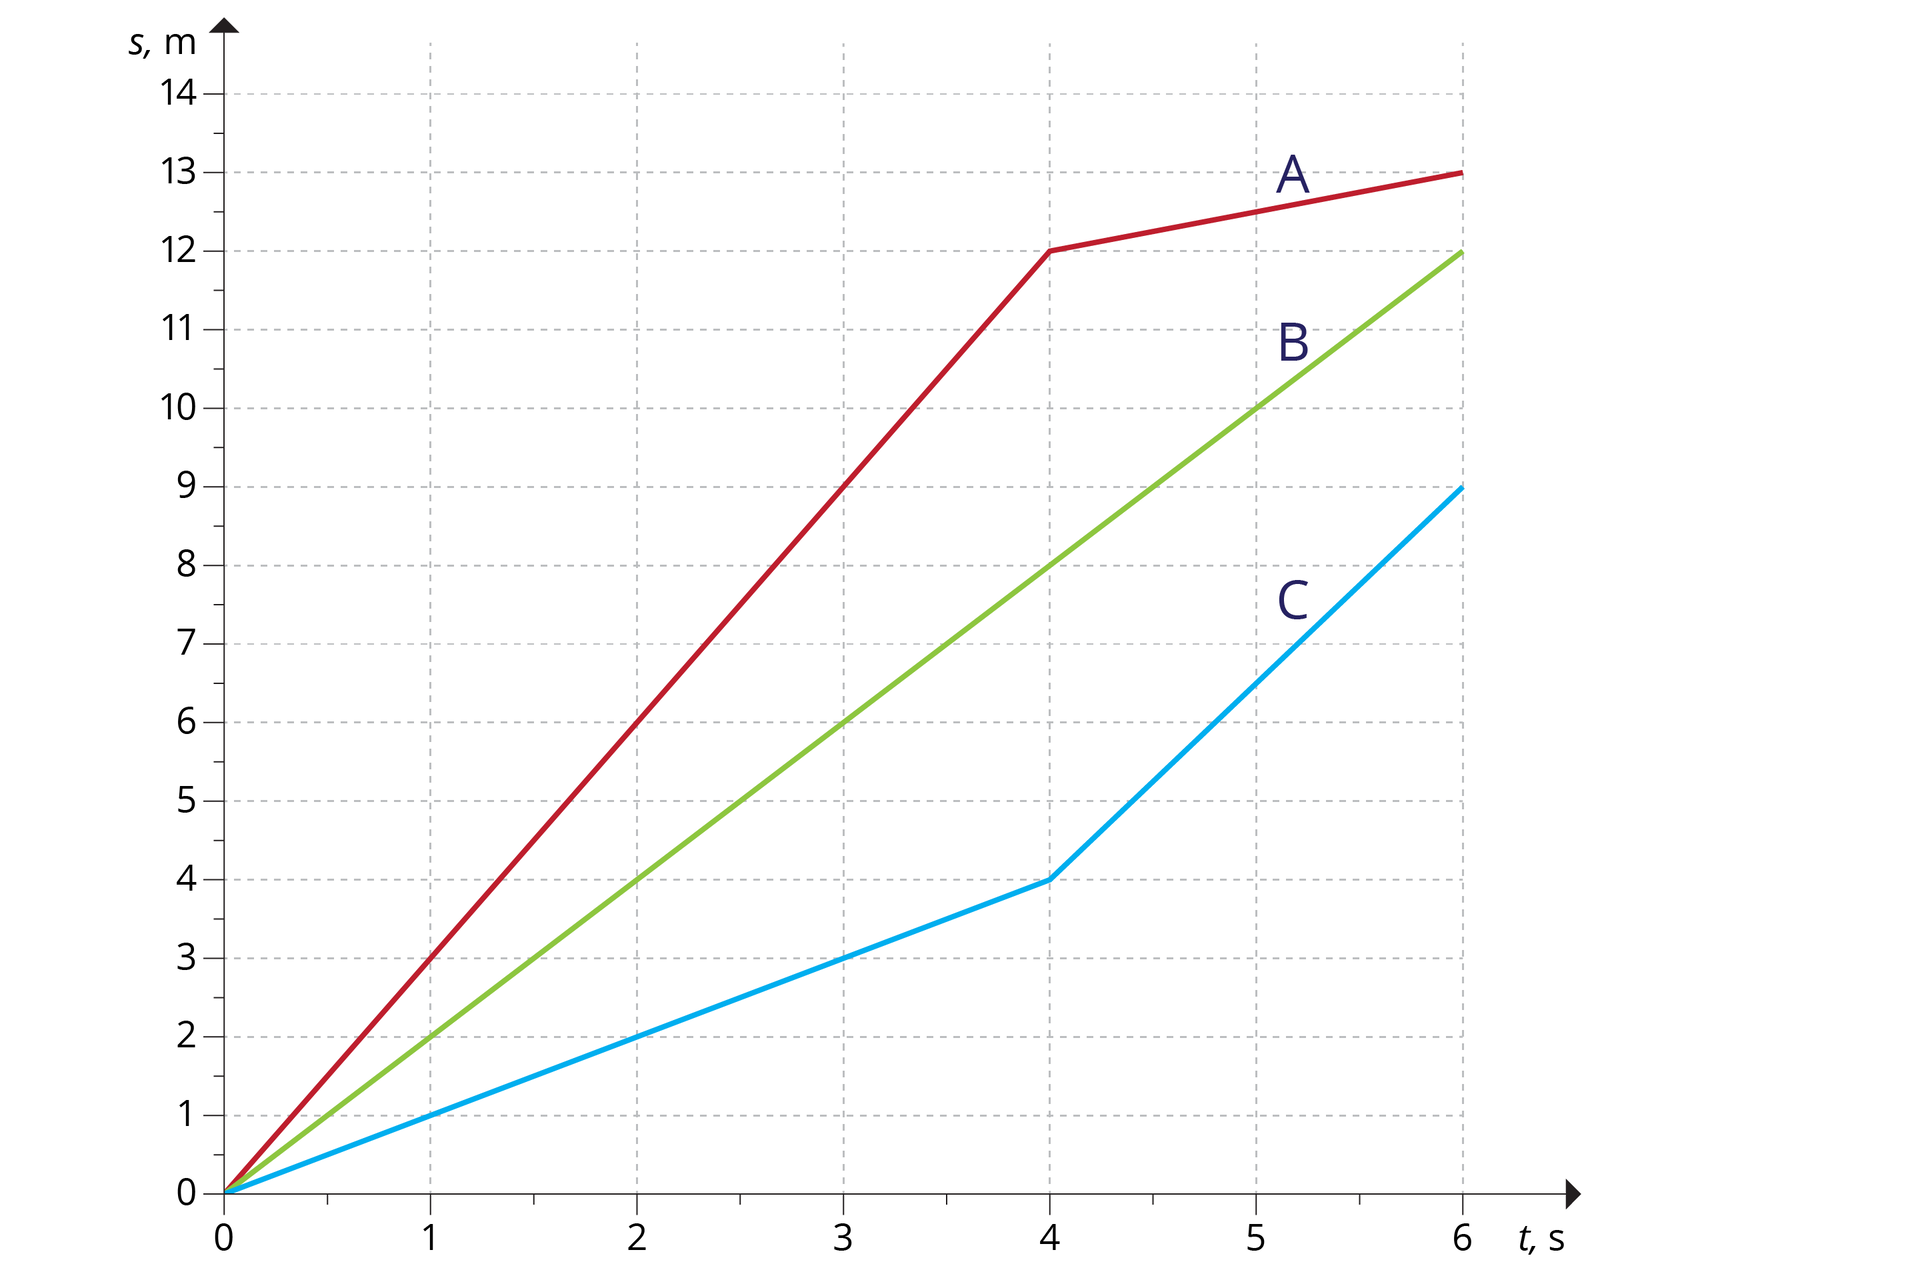 Ilustracja przedstawia wykres zależności drogi od czasu dla trzech ciał: A, B, C. A – kolor czerwony. B – kolor zielony. C – kolor niebeski. Oś odcięty od 0 do 6, co 1, opisana „t, s”. Oś rzędnych od 0 do 13, co 1, opisana „s, m”. Wykres dla ciała A przebiega przez następujące punkty, połączone odcinkami: (0,0) - początek; (4, 12), (6, 13) – koniec. Wykres dla ciała B (tworzący odcinek) przebiega przez następujące punkty: (0,0) - początek; (6, 12) – koniec. Wykres dla ciała C przebiega przez następujące punkty, połączone odcinkami: (0,0) - początek; (4, 4), (6, 9) – koniec.